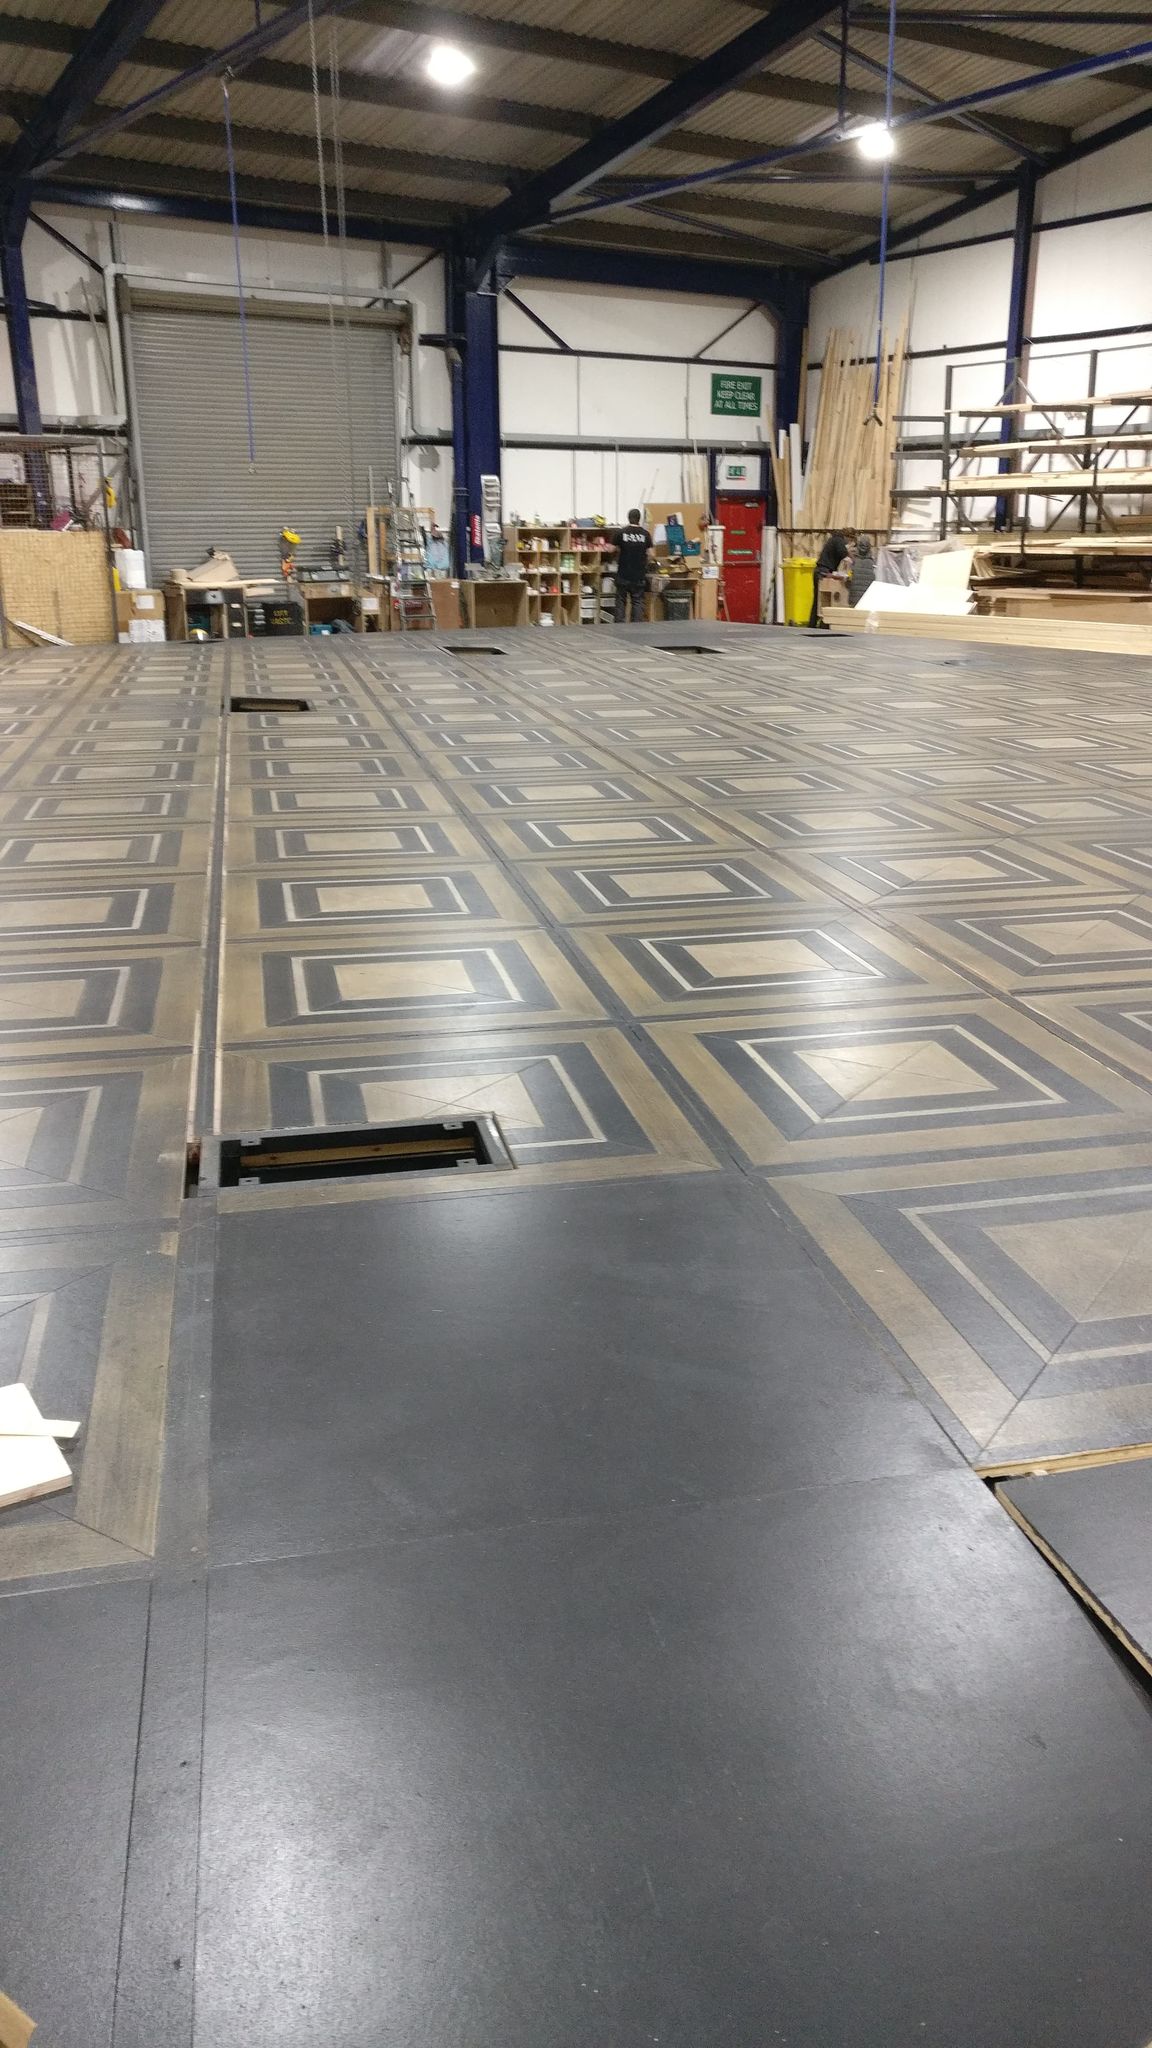 Painted floor tiles.